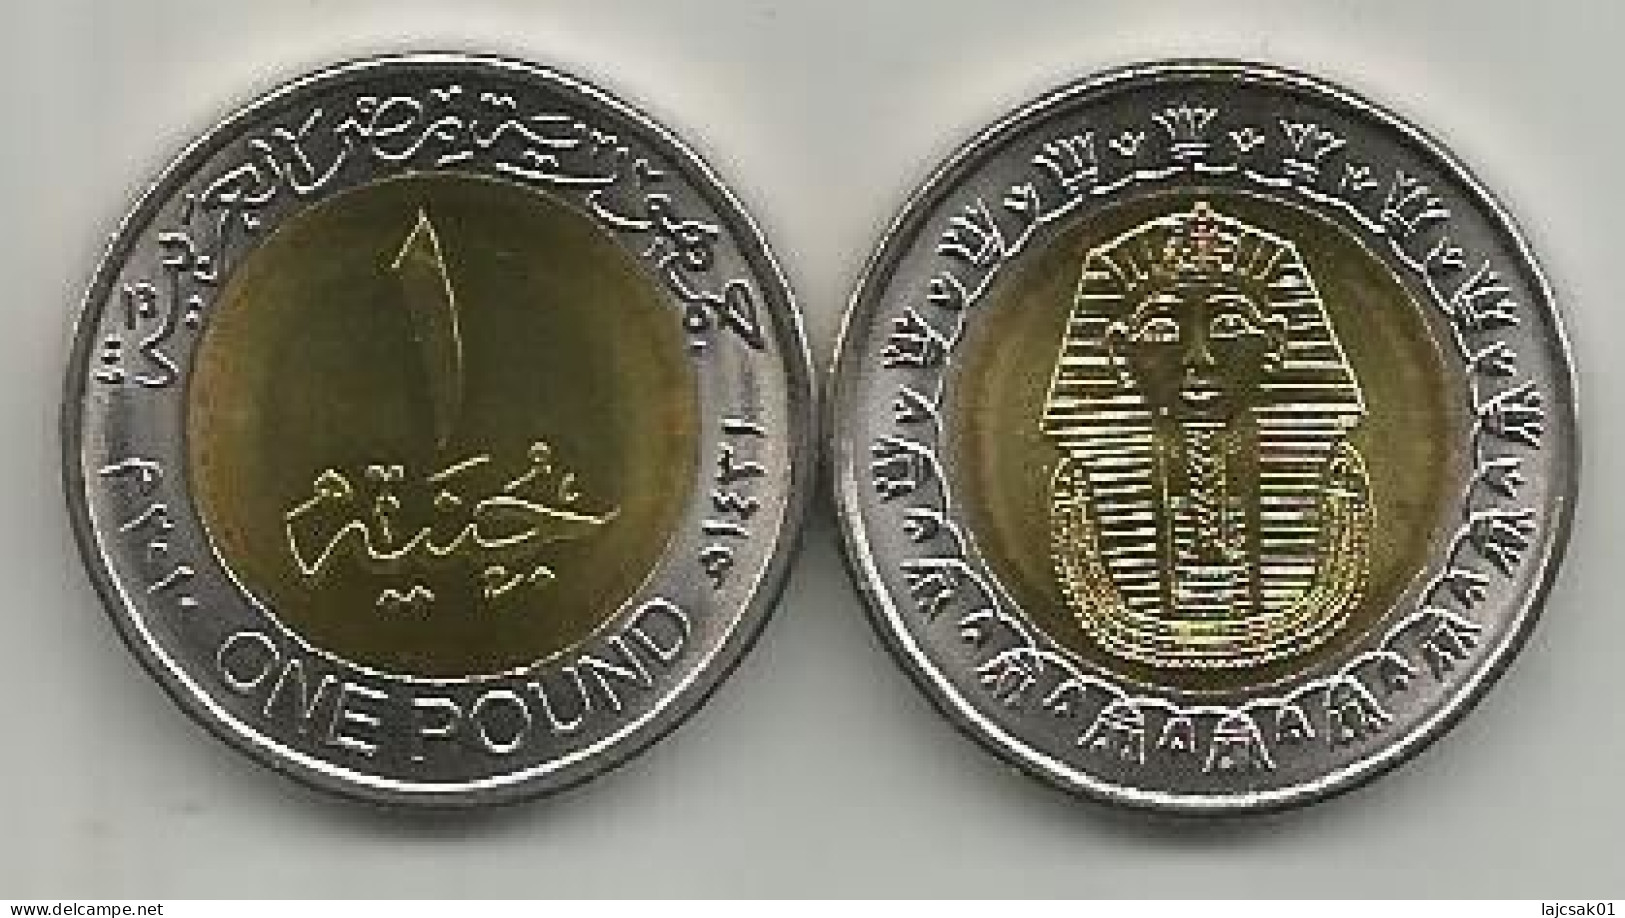 Egypt 1 Pound 2010. High Grade Bimetallic - Egypt